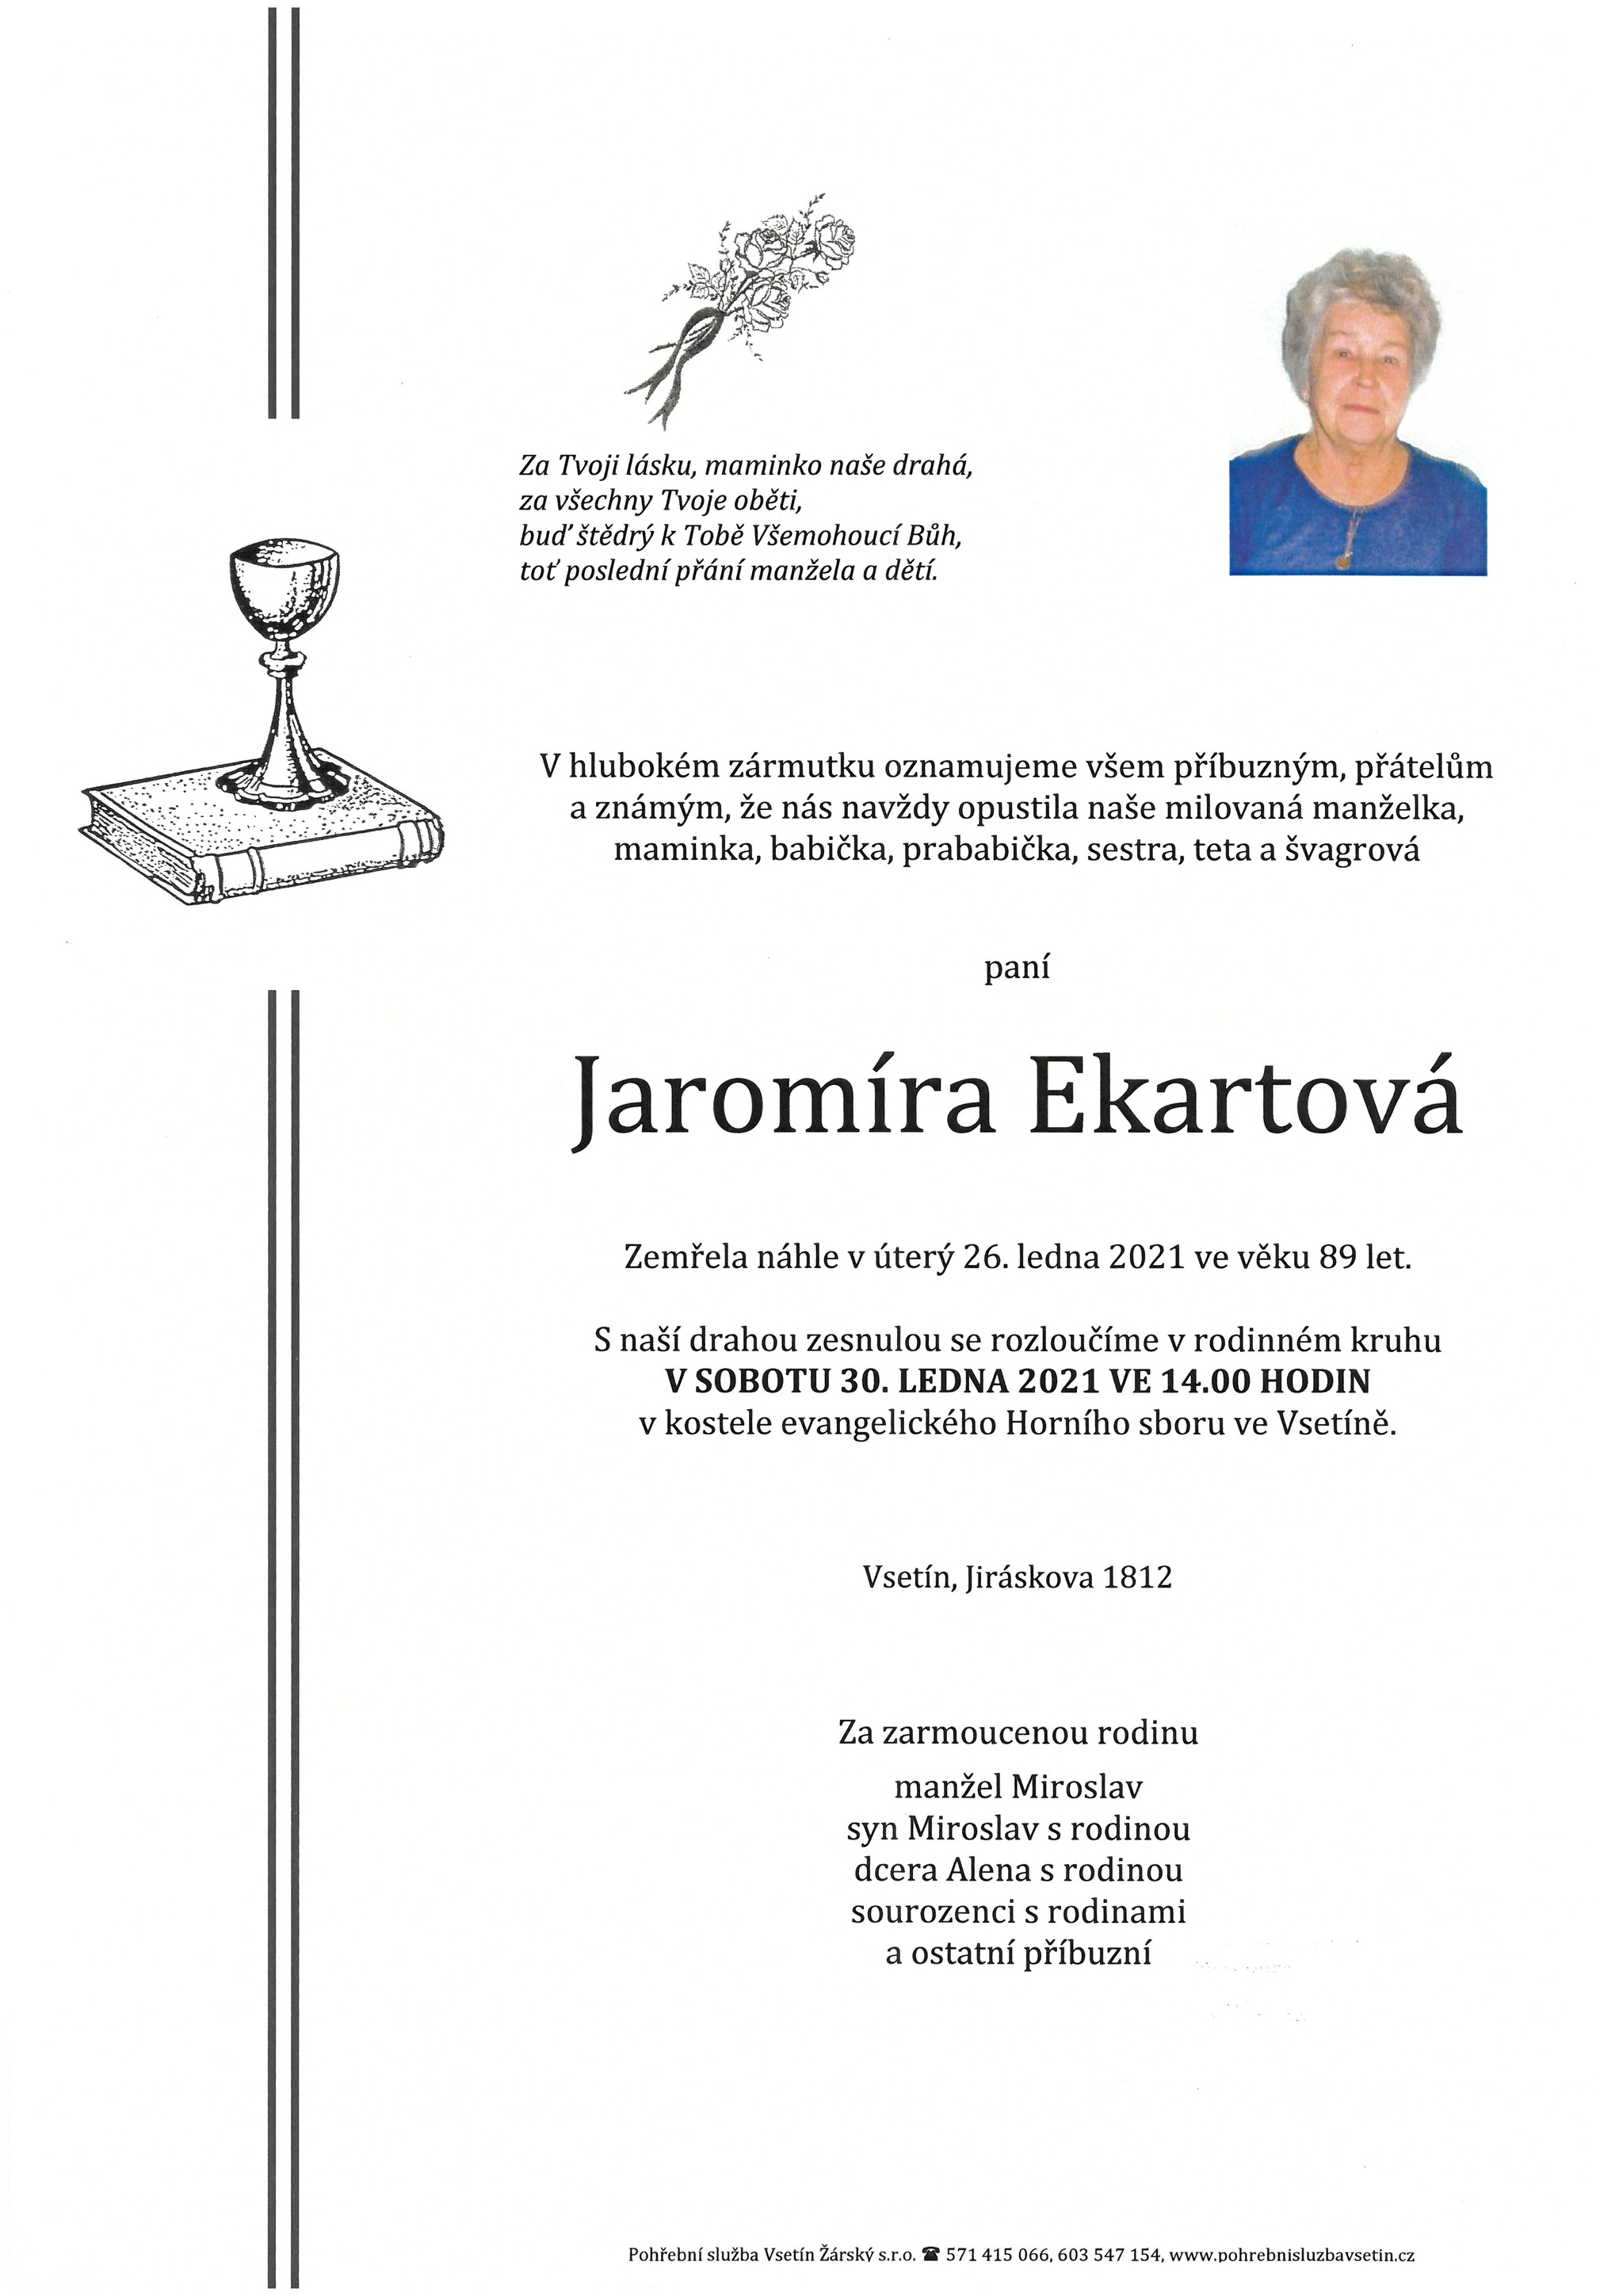 Jaromíra Ekartová